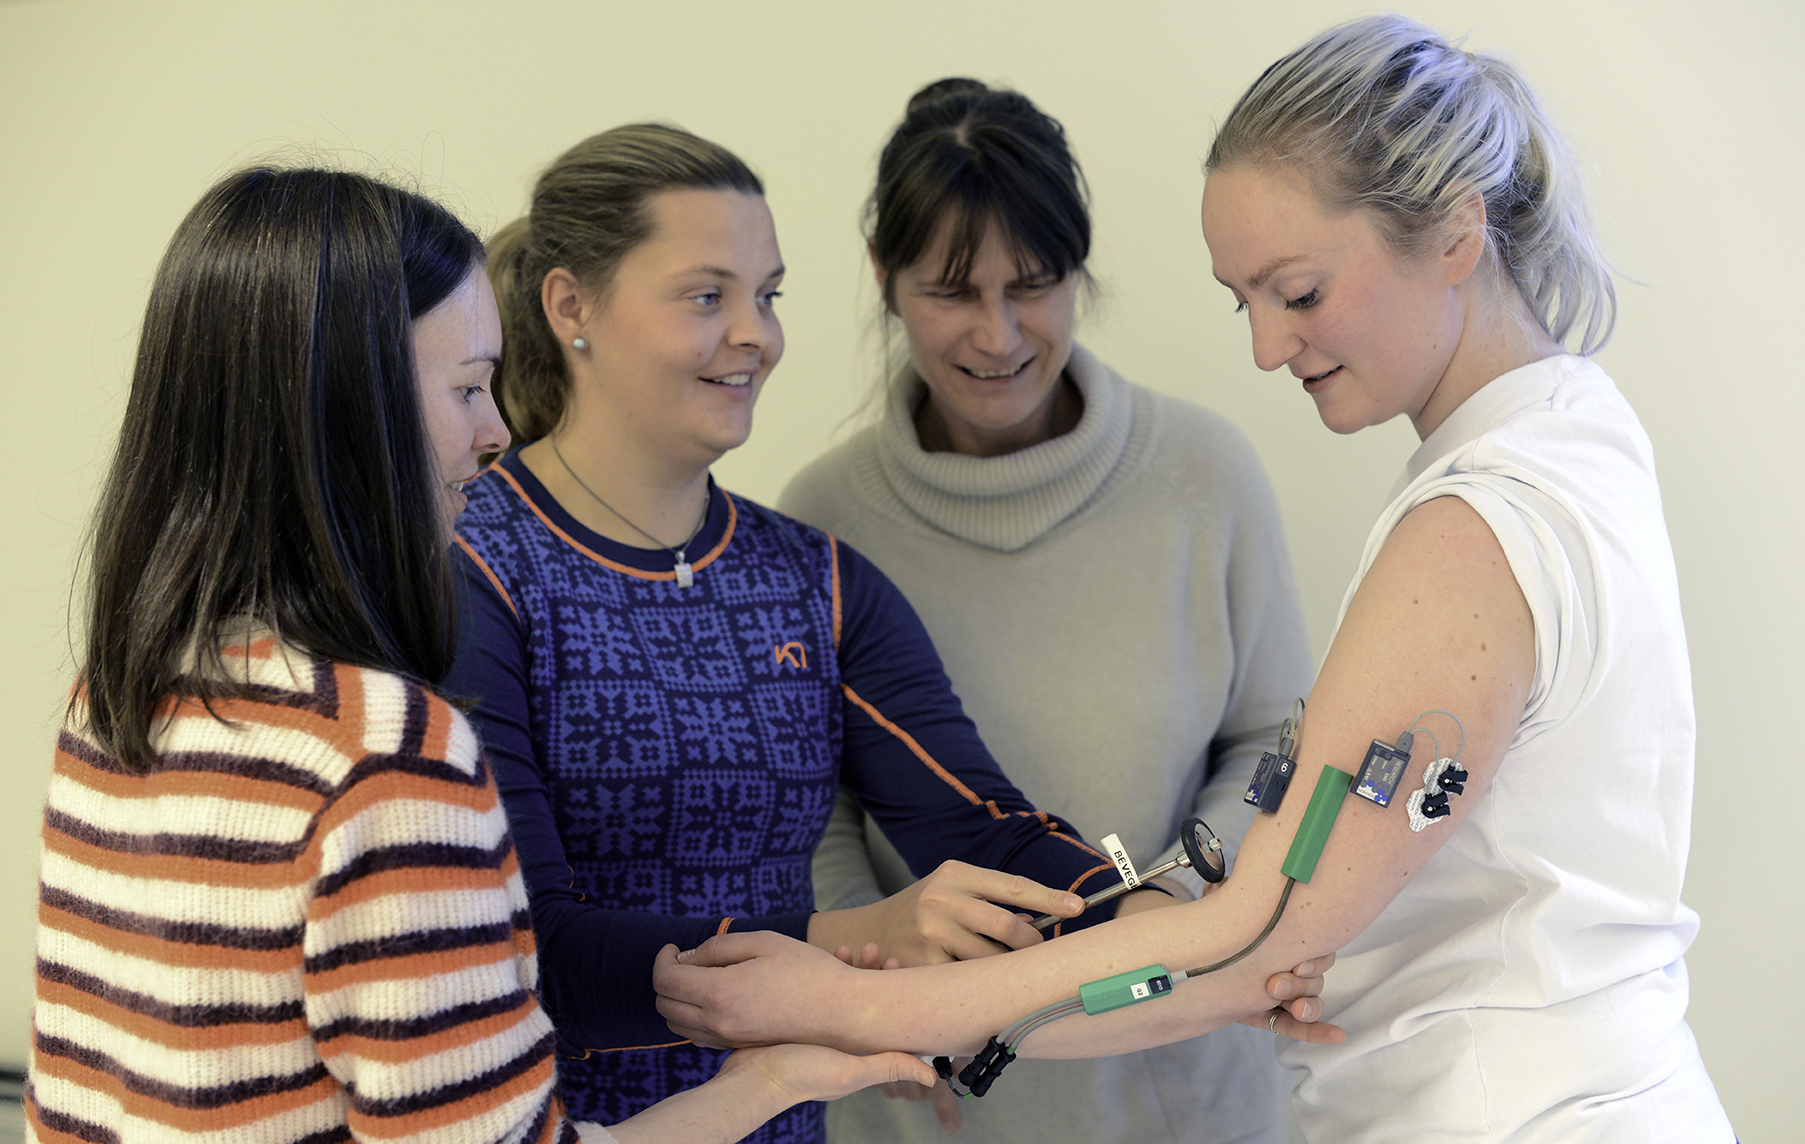 student bruker reflekshammer på medstudent med påmonterte sensorer på arm. Underviser og medstudent ser på.